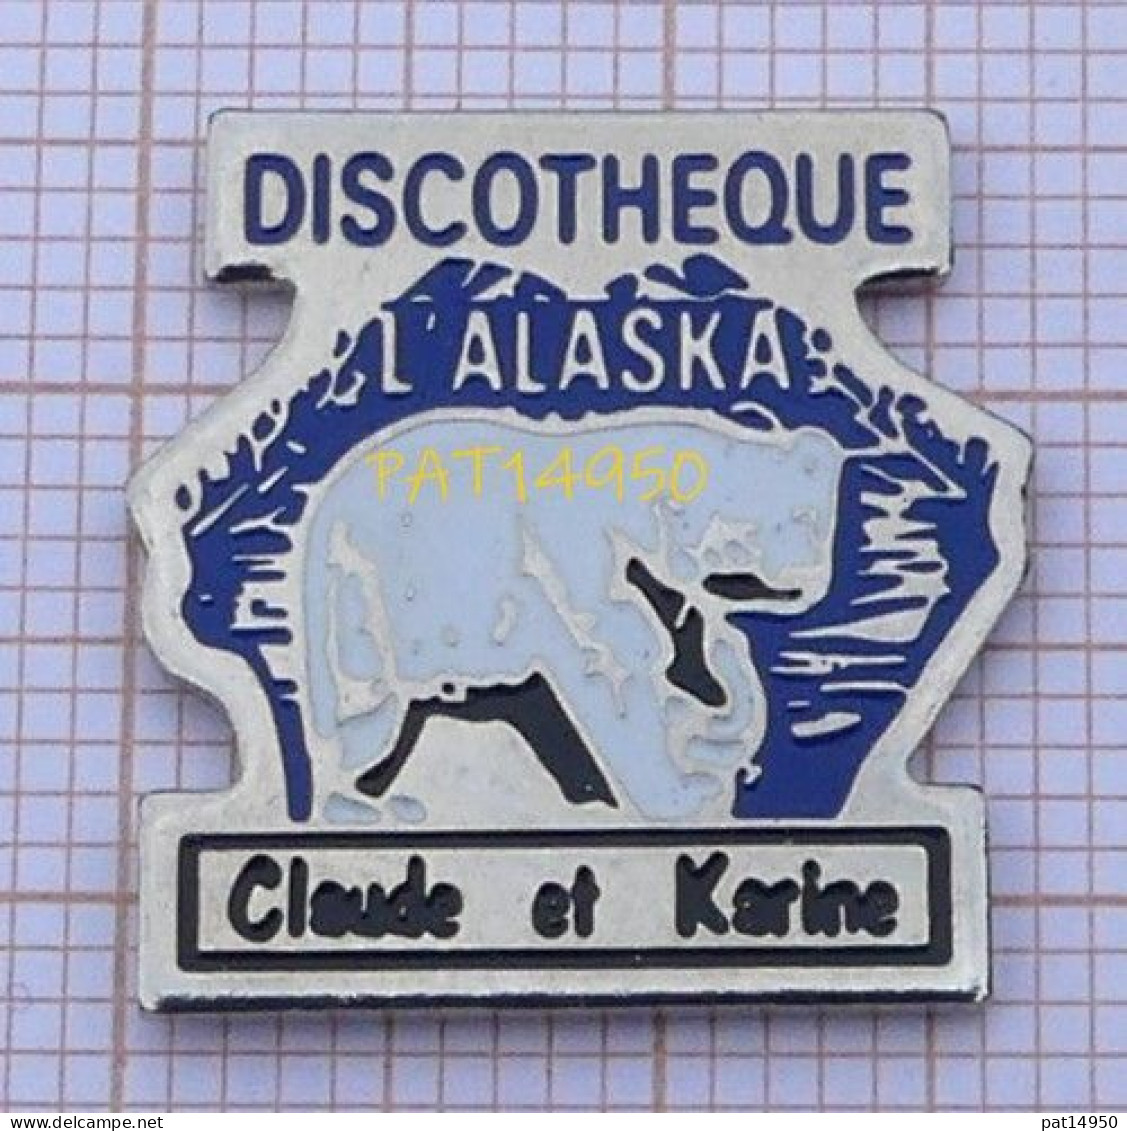 PAT14950  DISCOTHEQUE L'ALASKA Claude Et Karine CLUB BOITE DE NUIT OURS BLANC - Musik